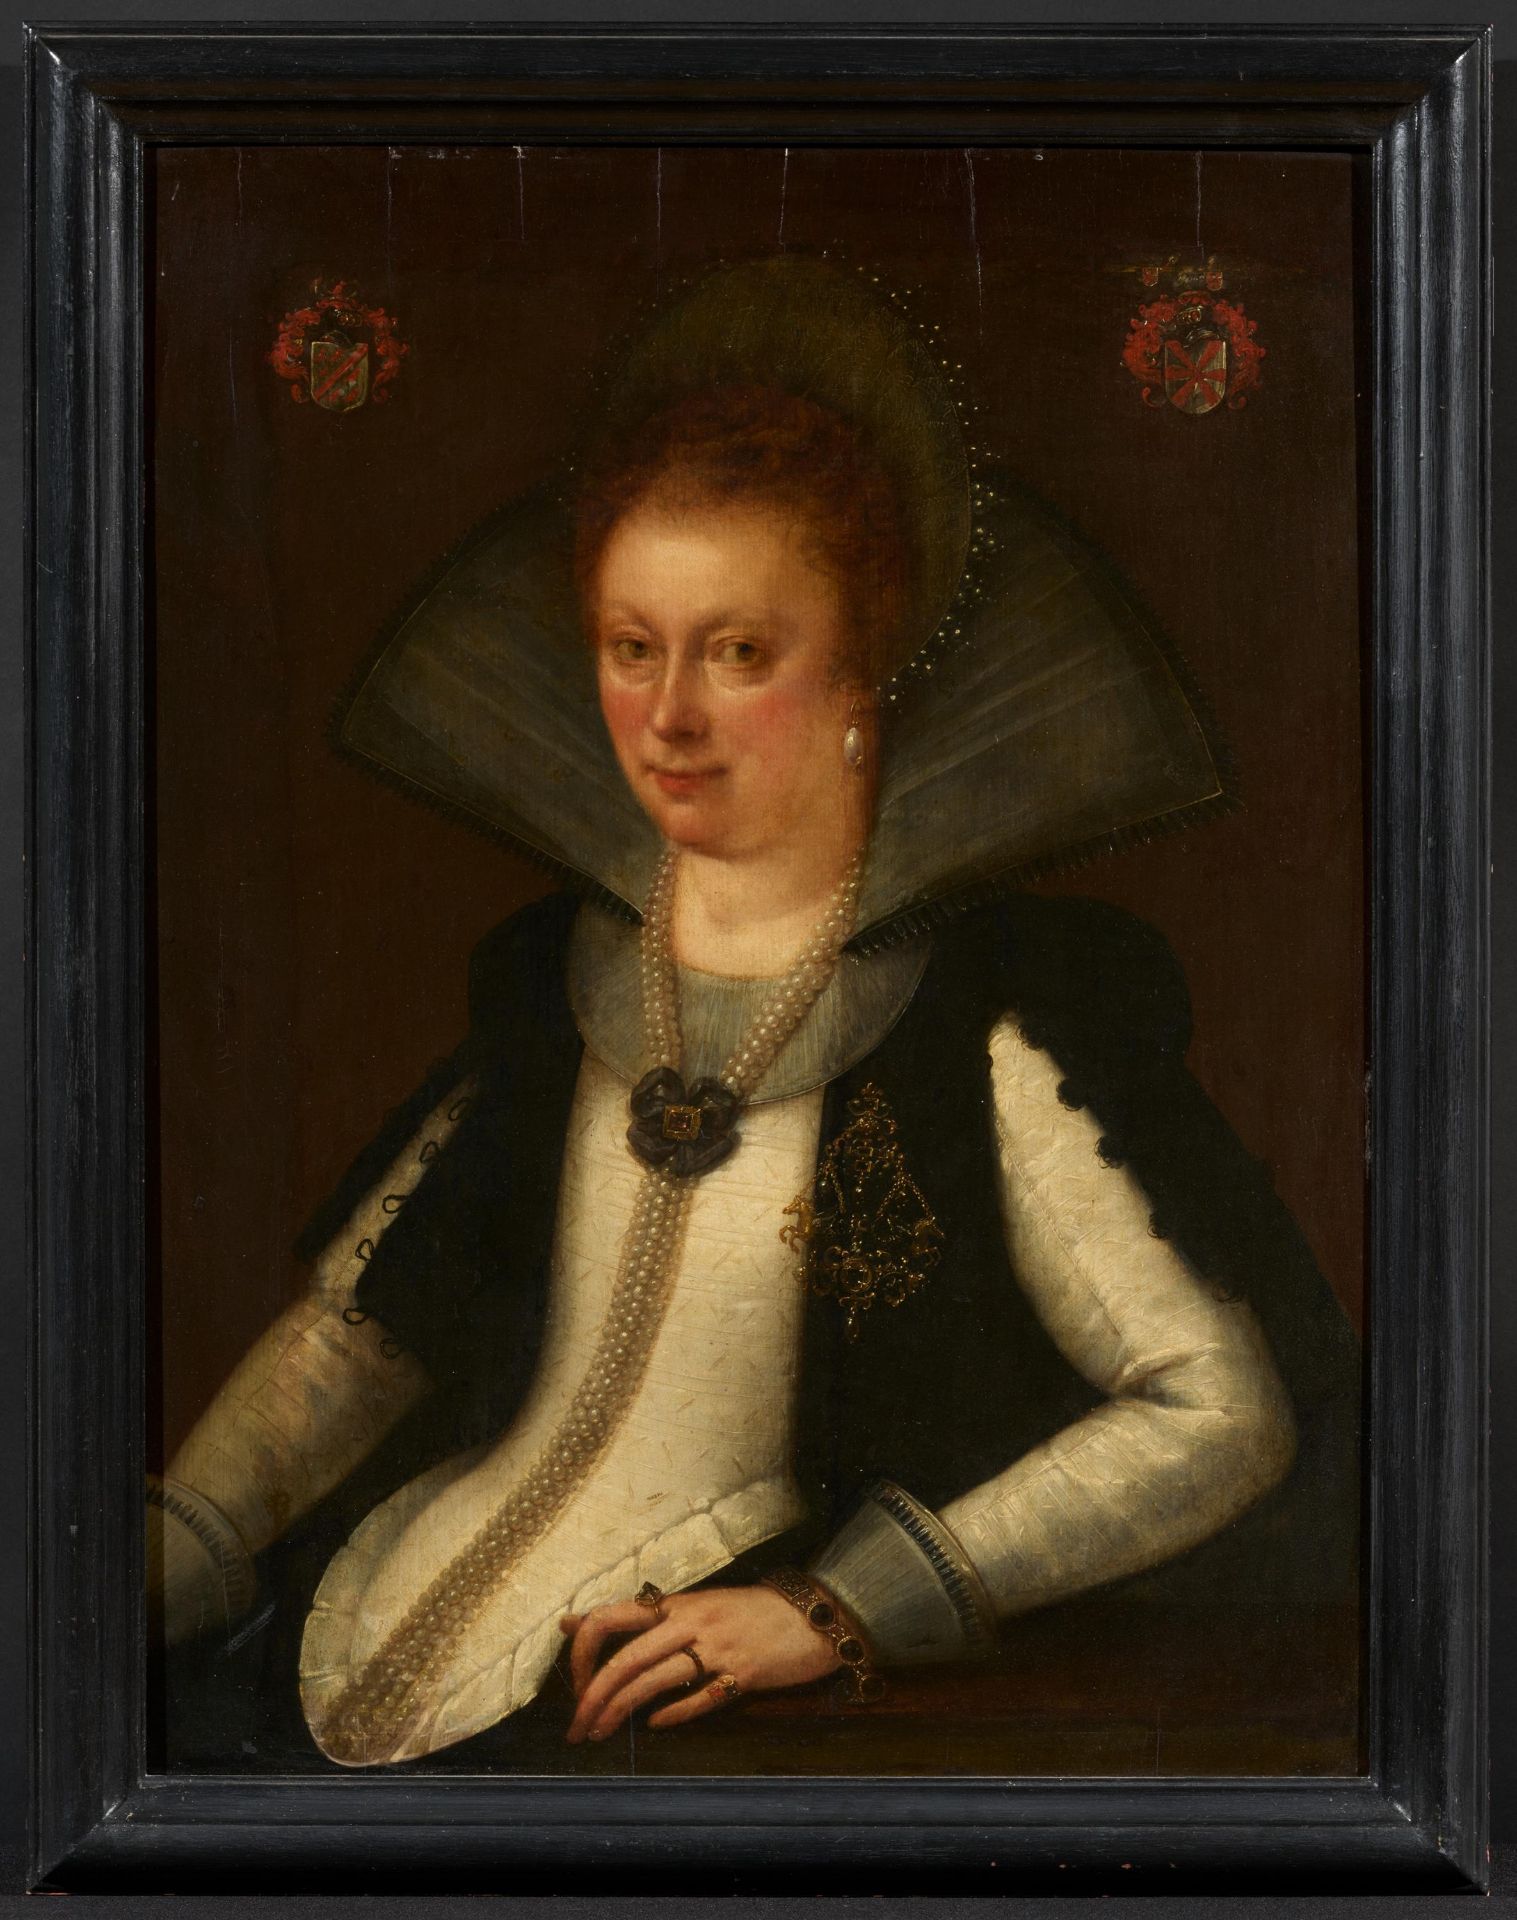 Gortzius Geldorp: Anna Catharina Waldbott von Bassenheim zu Gudenau (1587 - 1666) in a White Bodice - Image 2 of 5